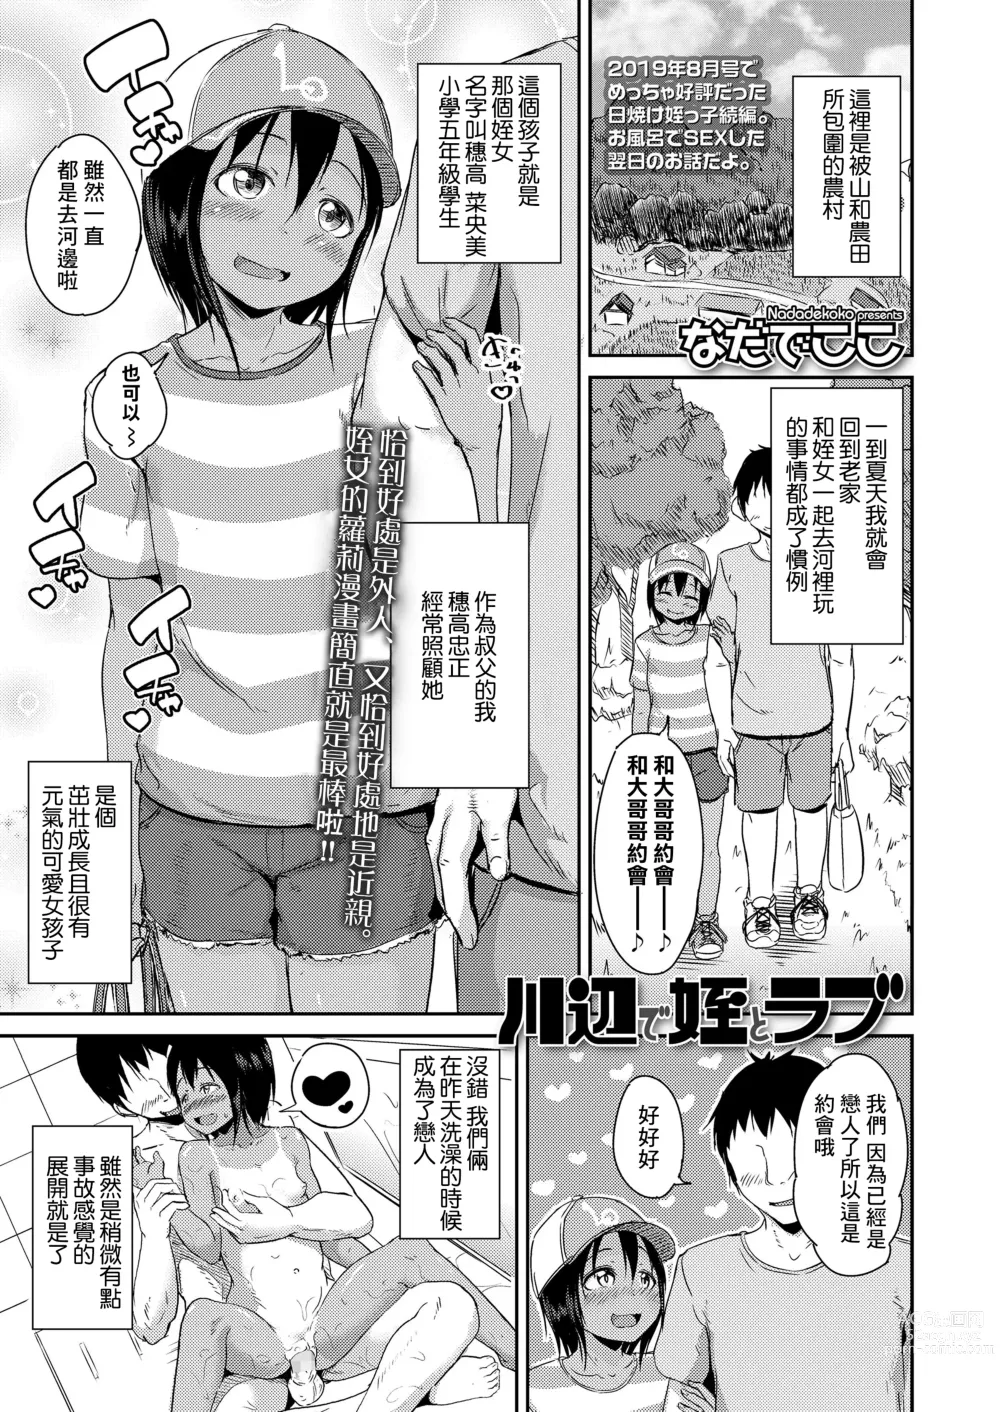 Page 1 of manga Kawabe de Mei Trap